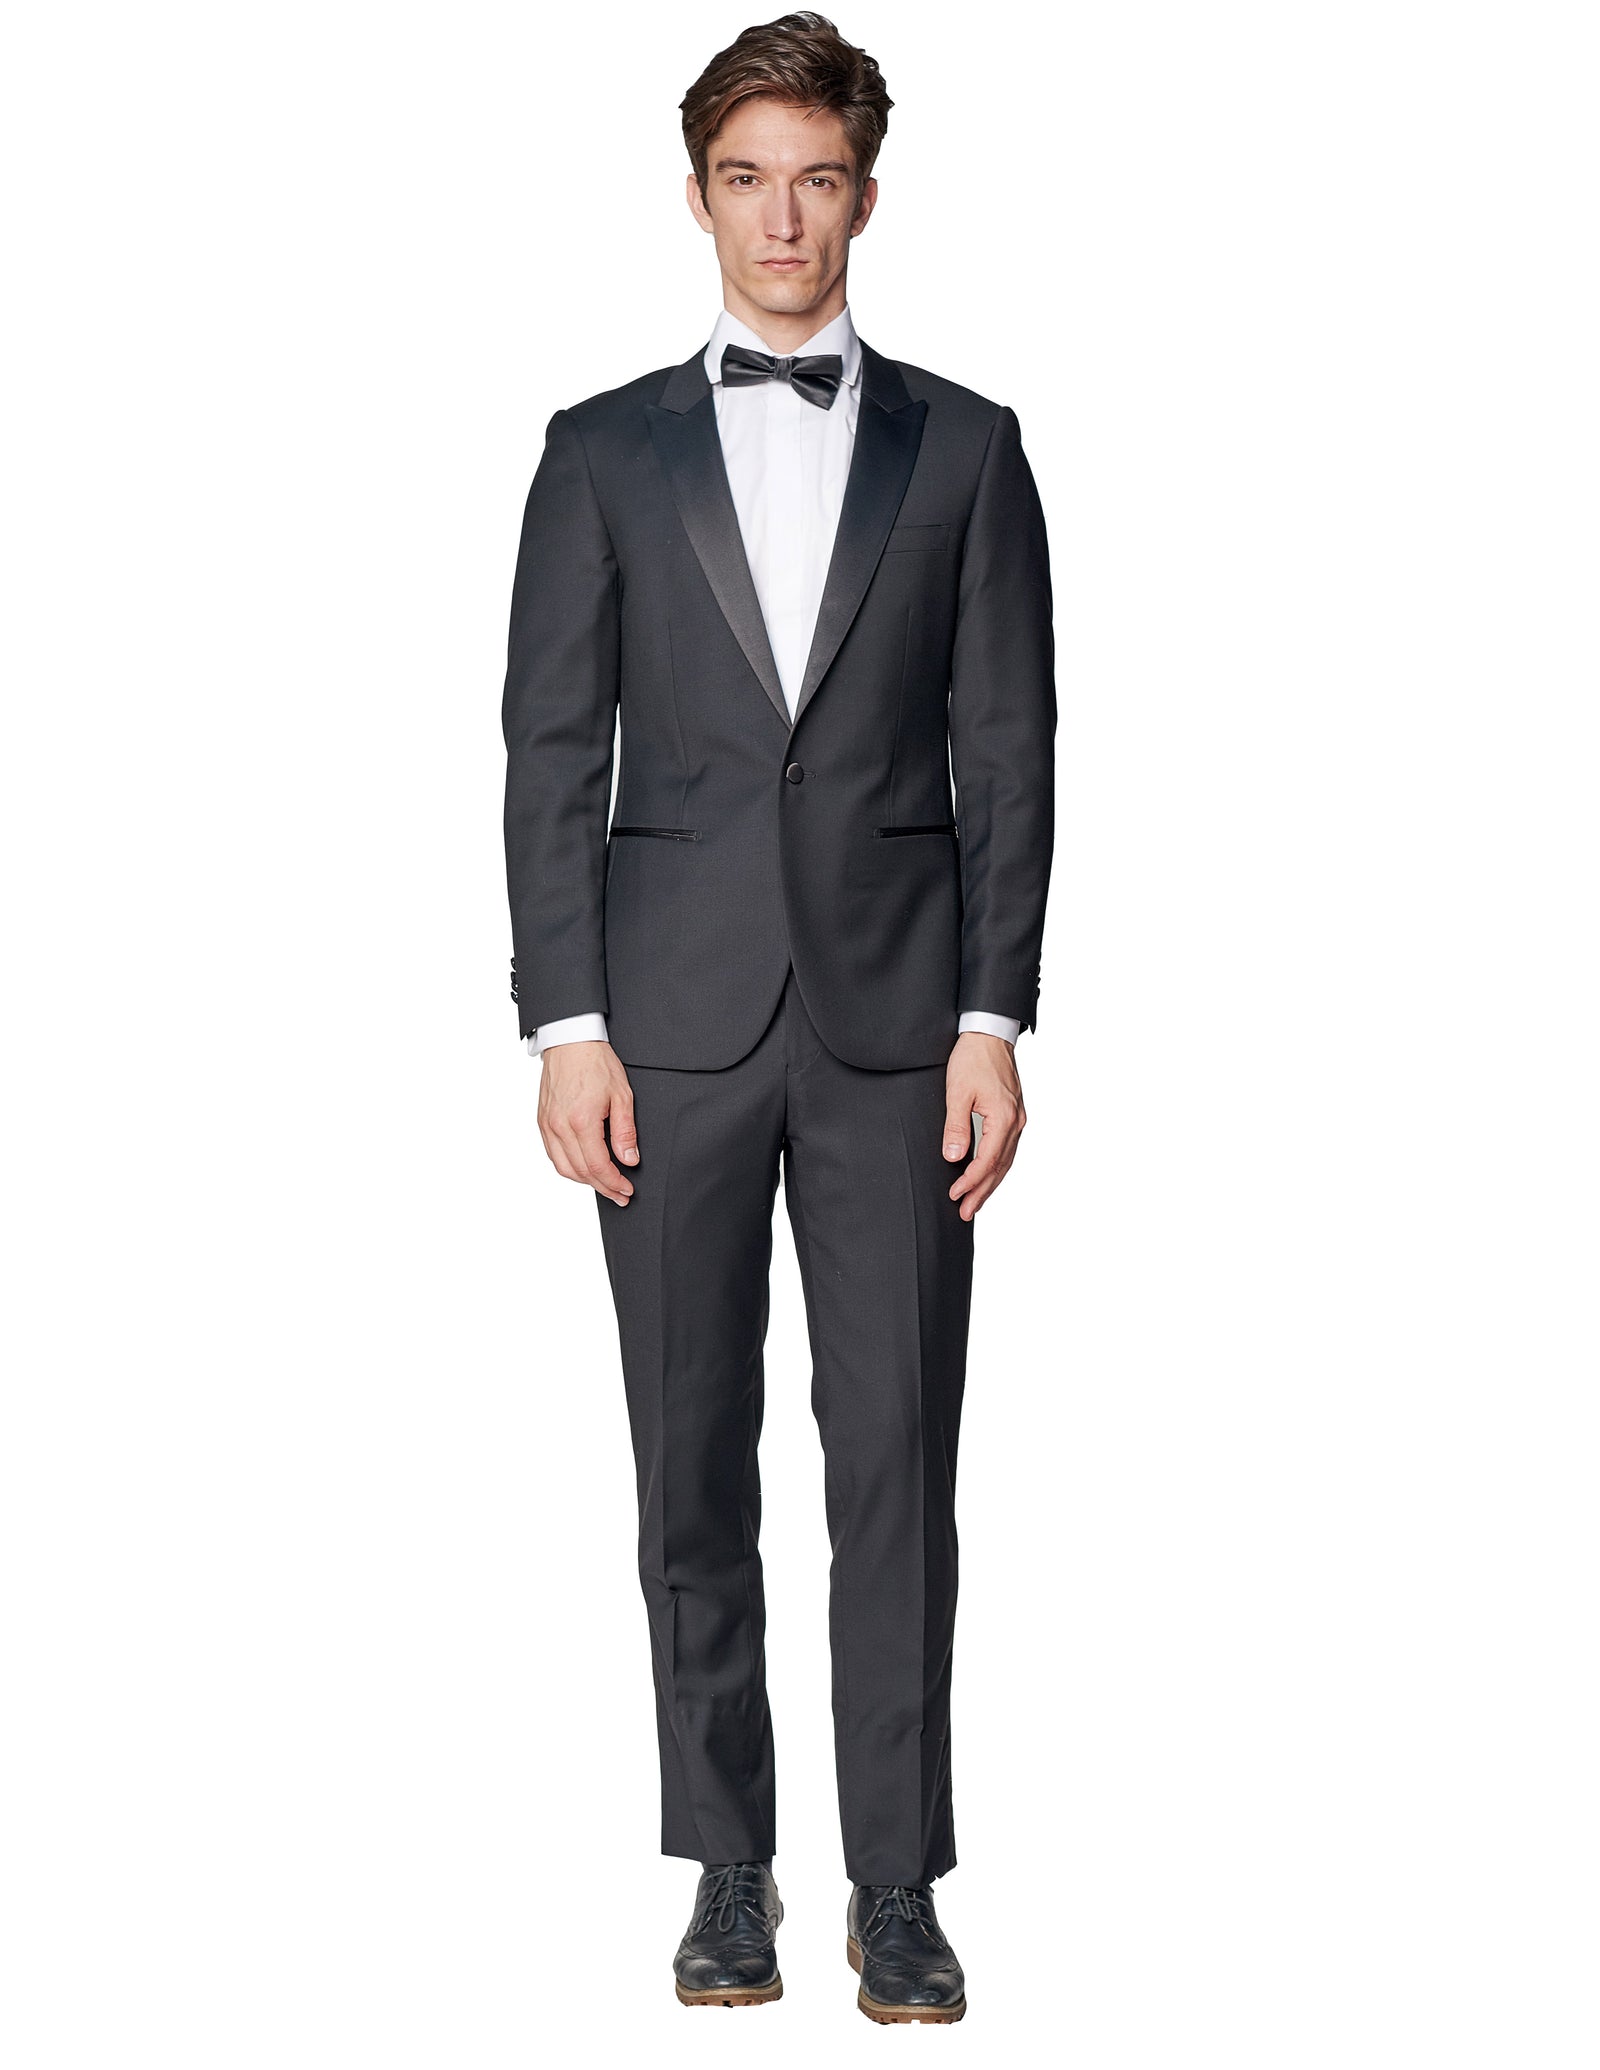 Complete look - BLACK PEAK SATIN LAPEL TUXEDO - Classy Formal Wear